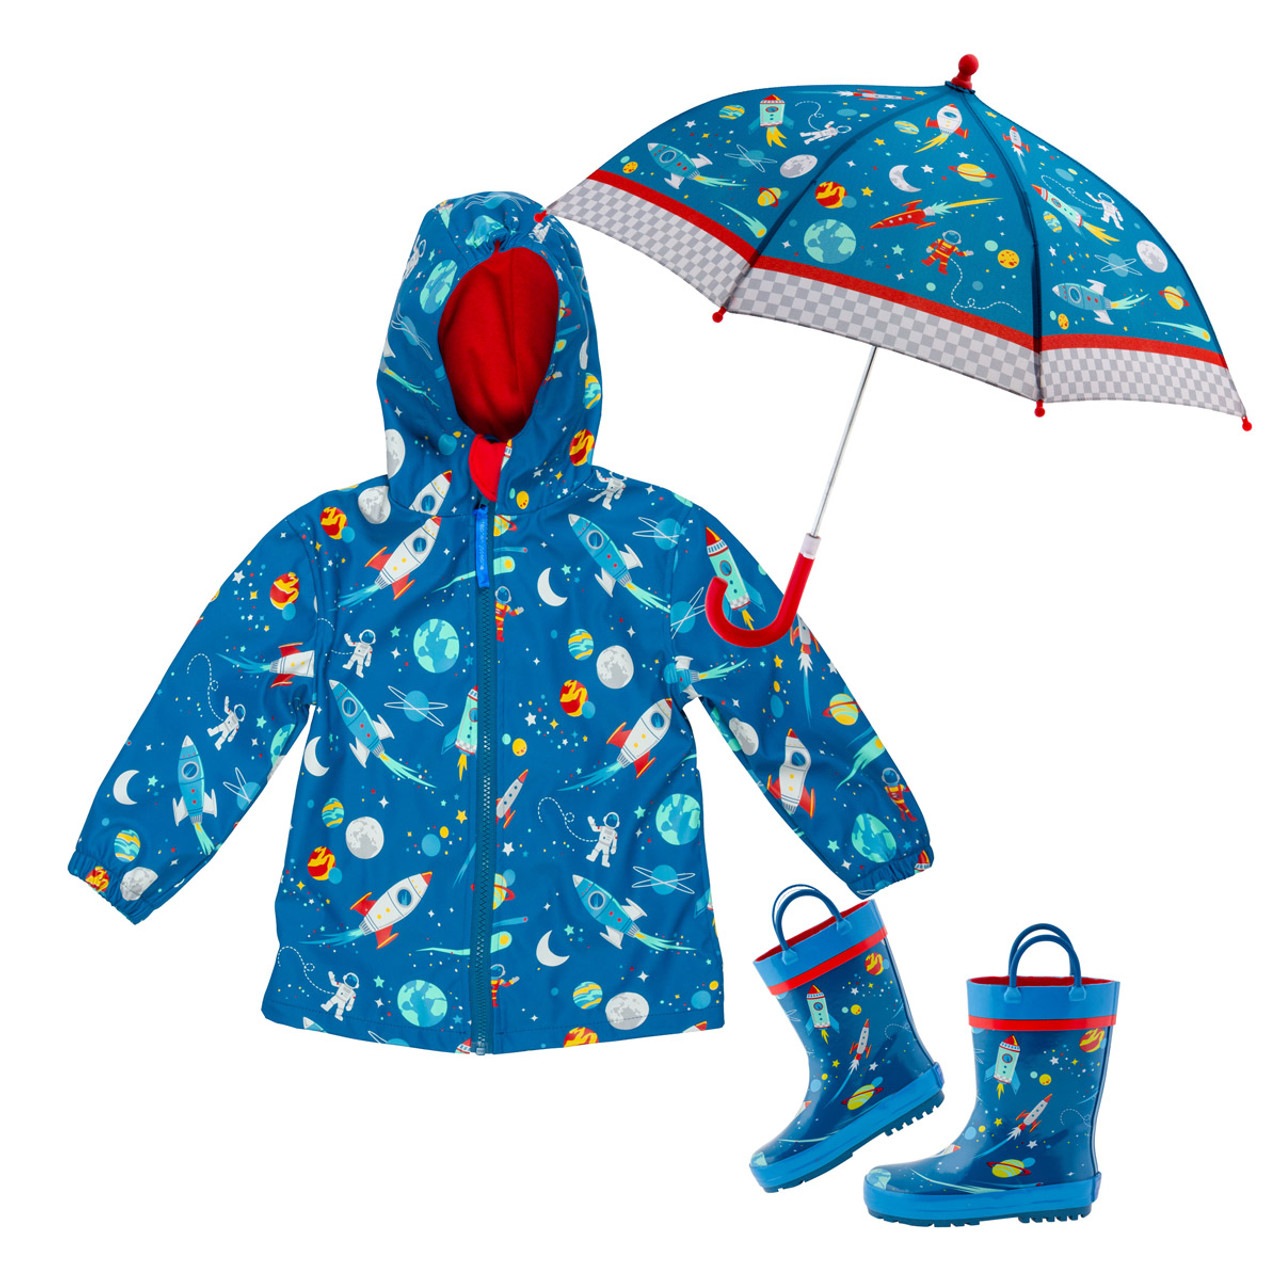 Rain Gear, Rain Jackets & Footwear